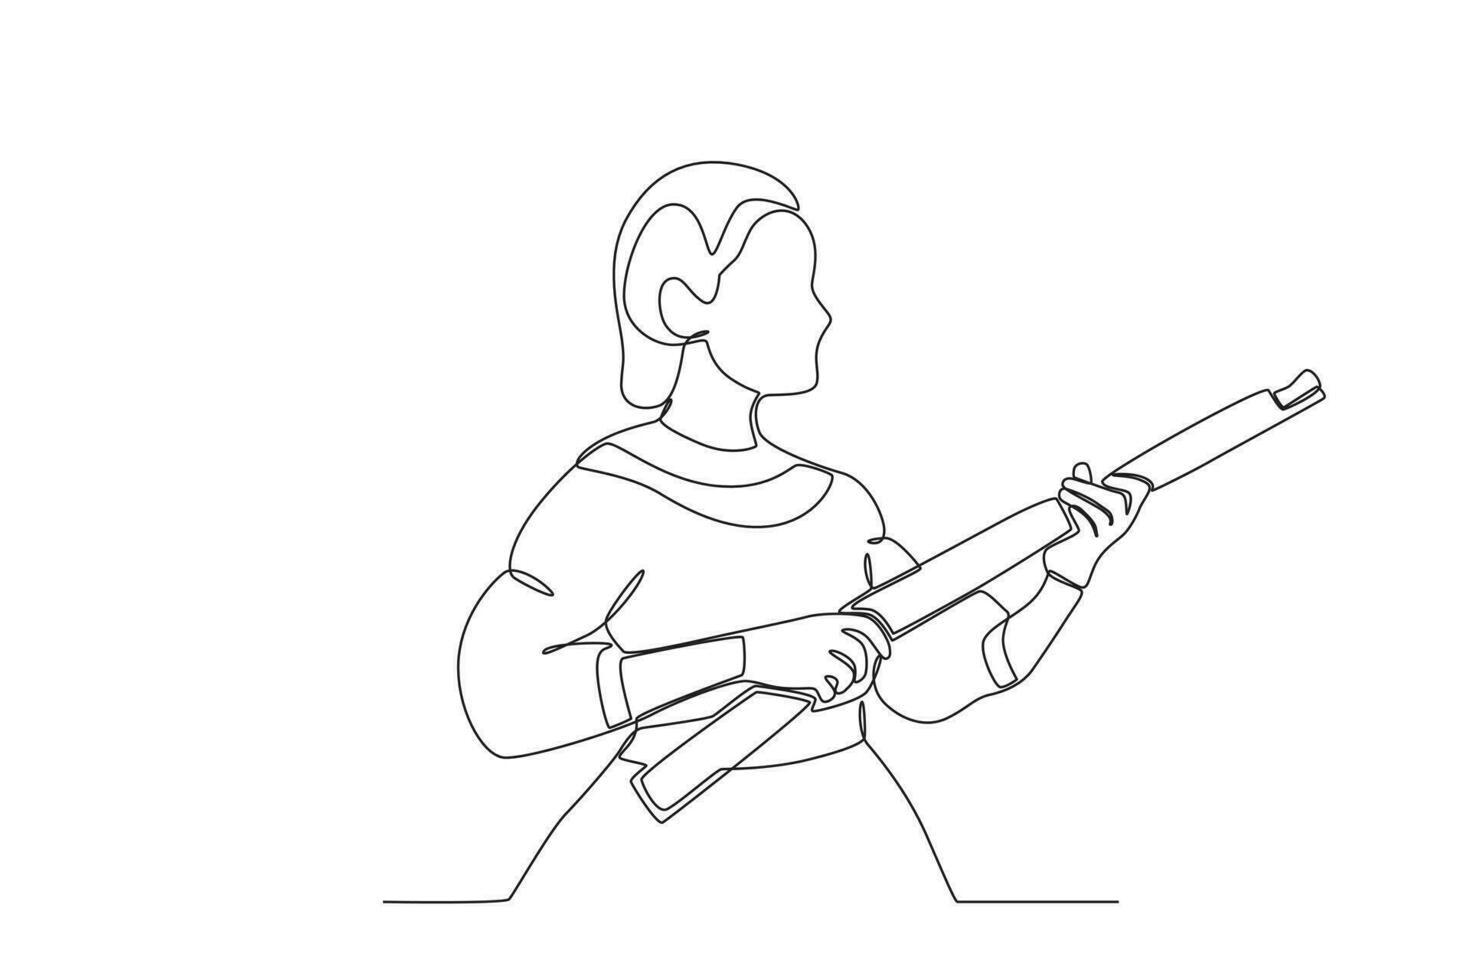 A woman holding a gun vector